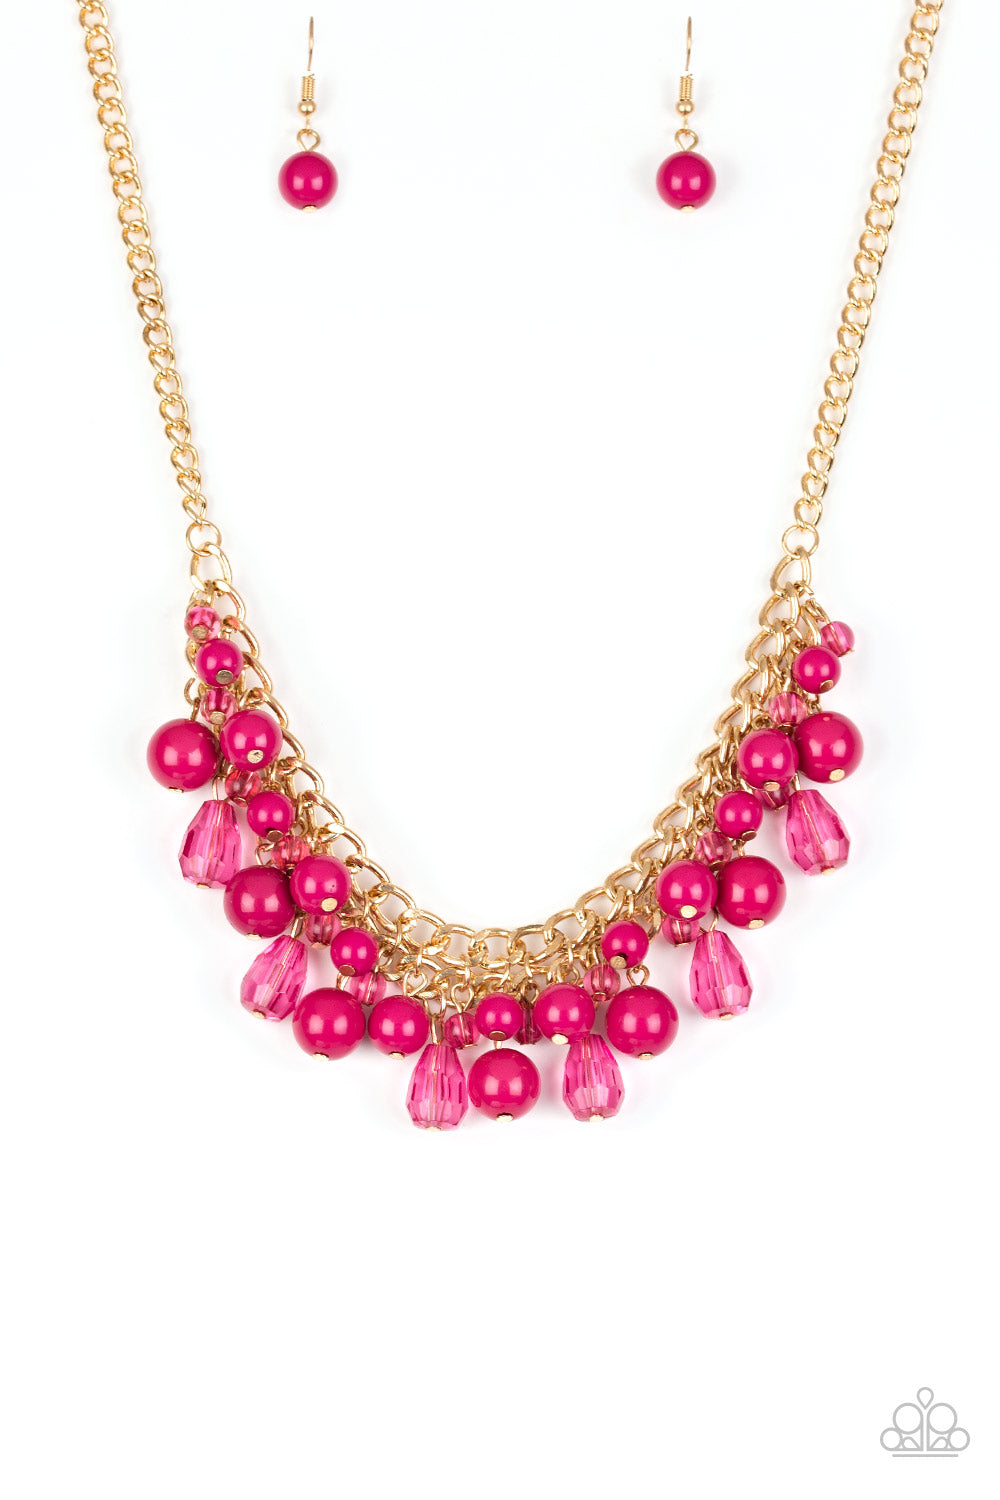 Tour de Trendsetter - Pink Necklace Set - Princess Glam Shop